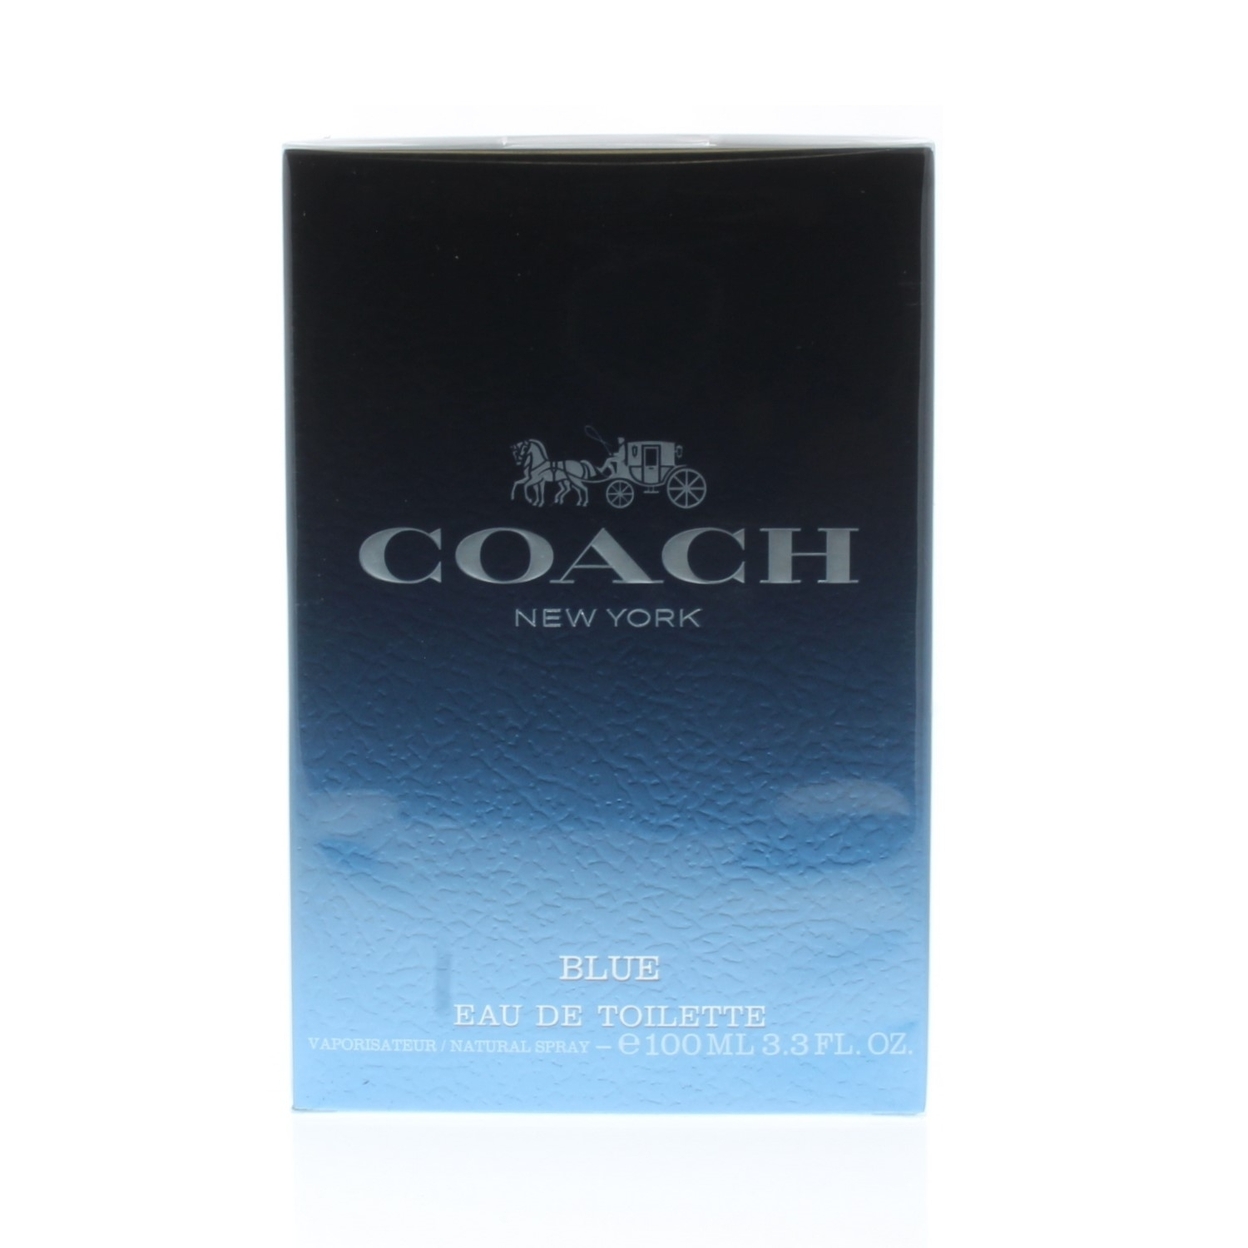 Coach Blue Eau de Toilette Spray for Men 3.3oz/100ml - image 1 of 3